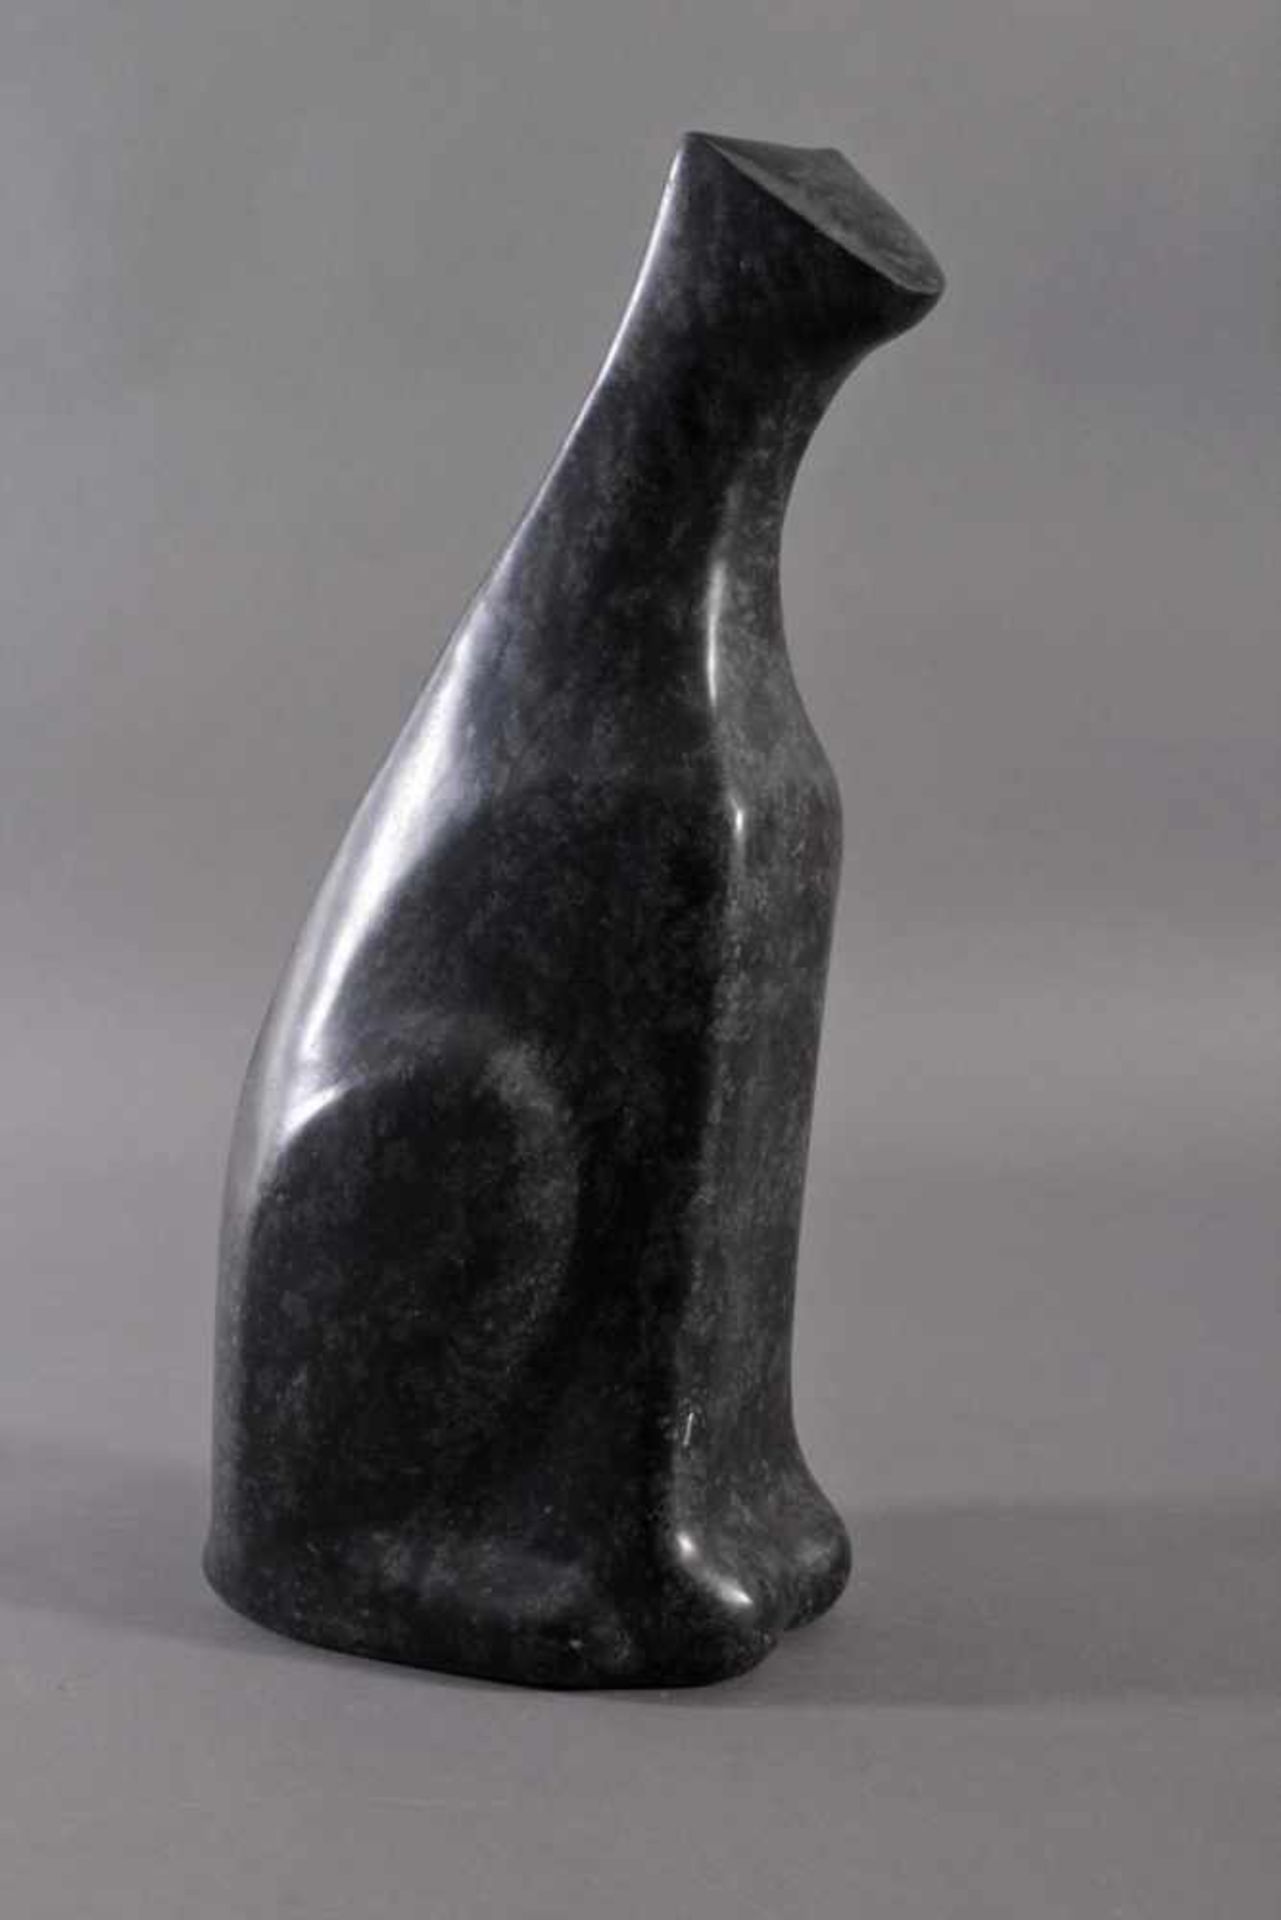 Steinskulptur "Katze"Schwarz / Grün, Höhe ca. 54,5 cm.- - -20.00 % buyer's premium on the hammer